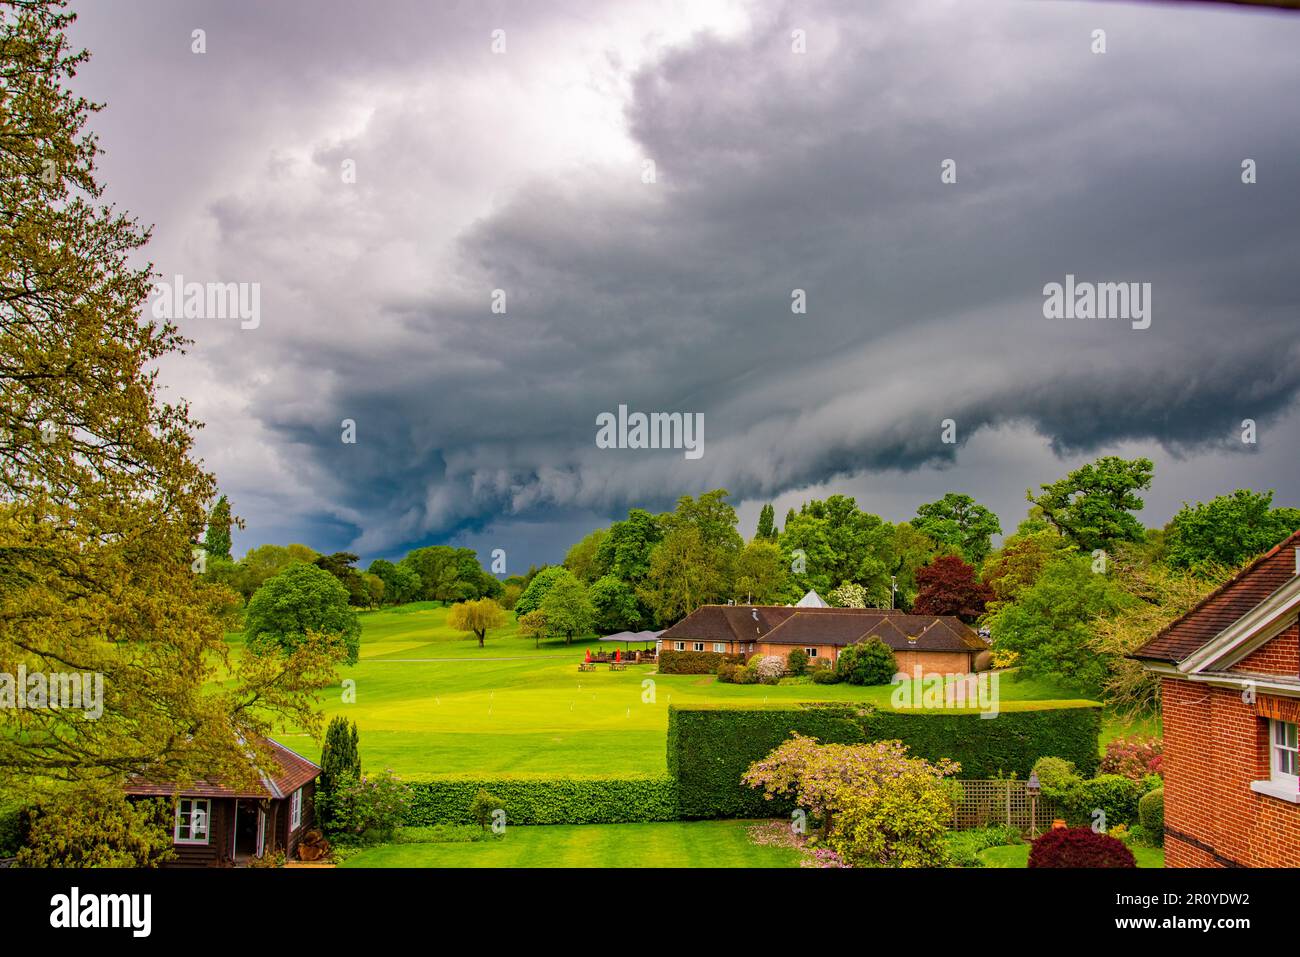 Unglaubliche Wolkenbildung der Arcus Shelf Cloud während des Sturms in Reading, Berkshire, Großbritannien Stockfoto